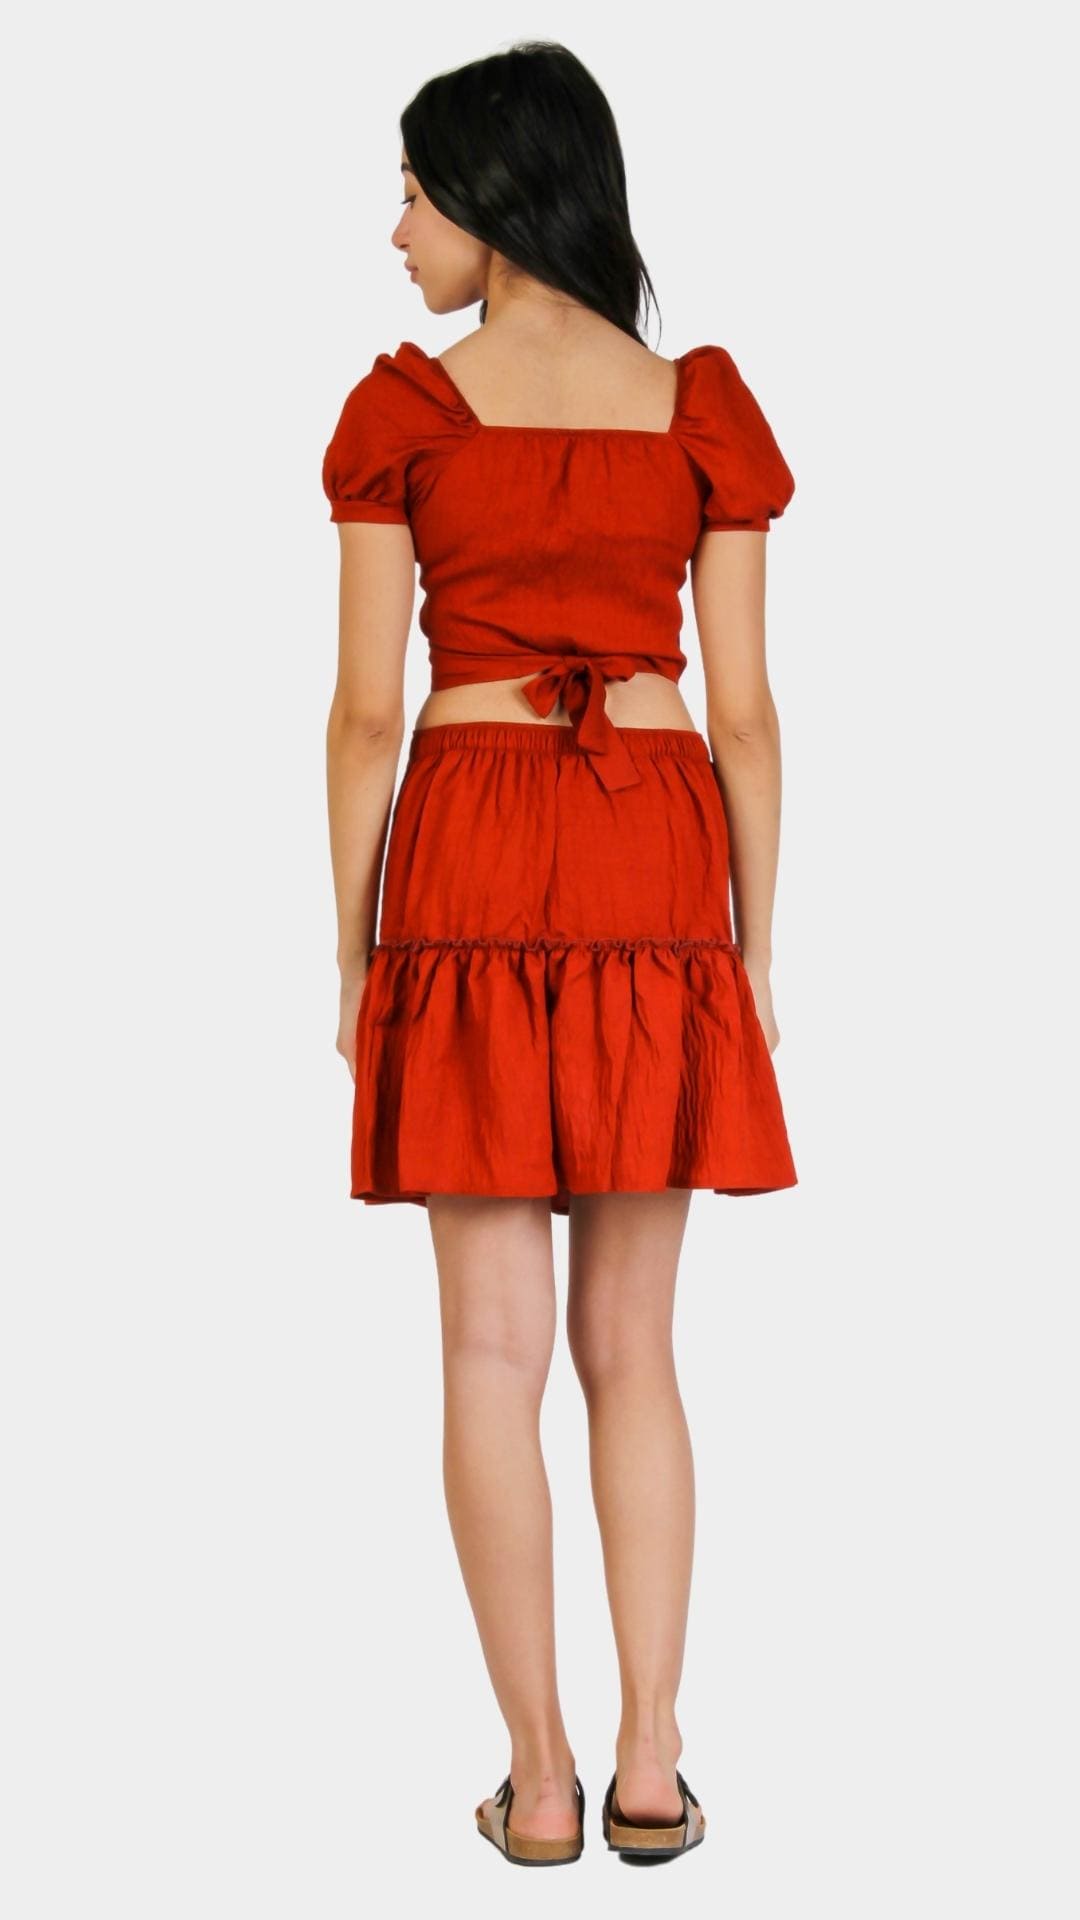 Short-Sleeve Crop Top With High Waist Skirt